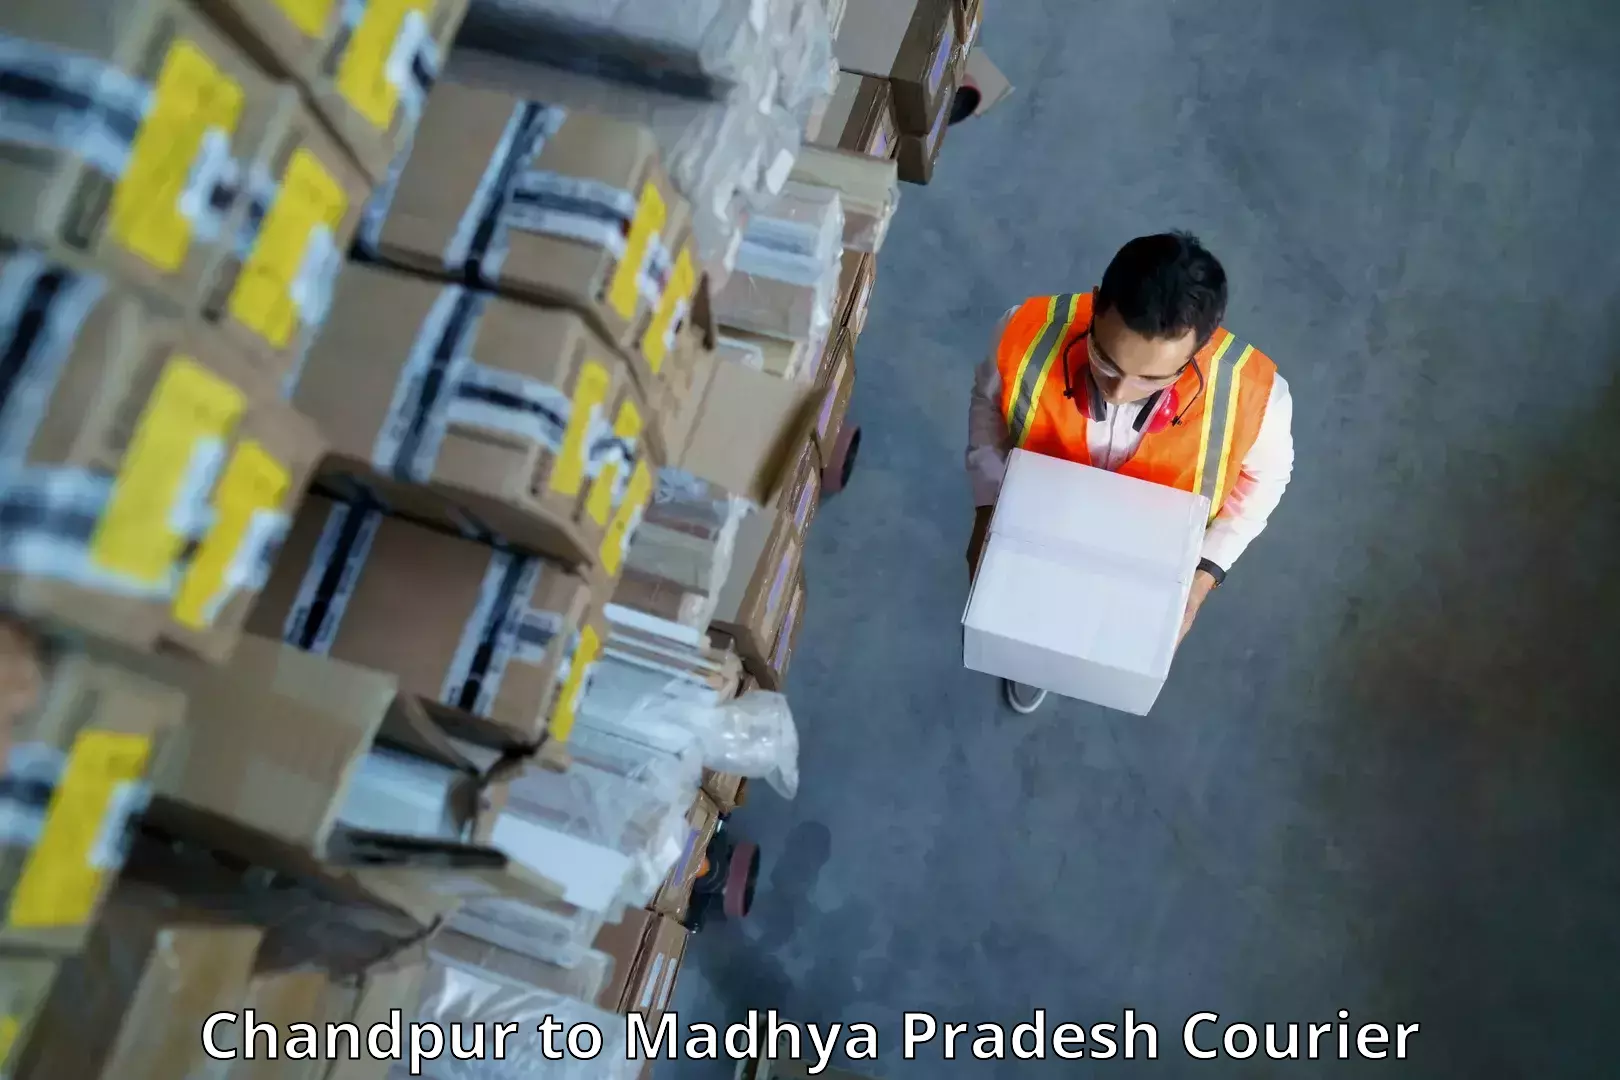 Urgent courier needs Chandpur to Garoth